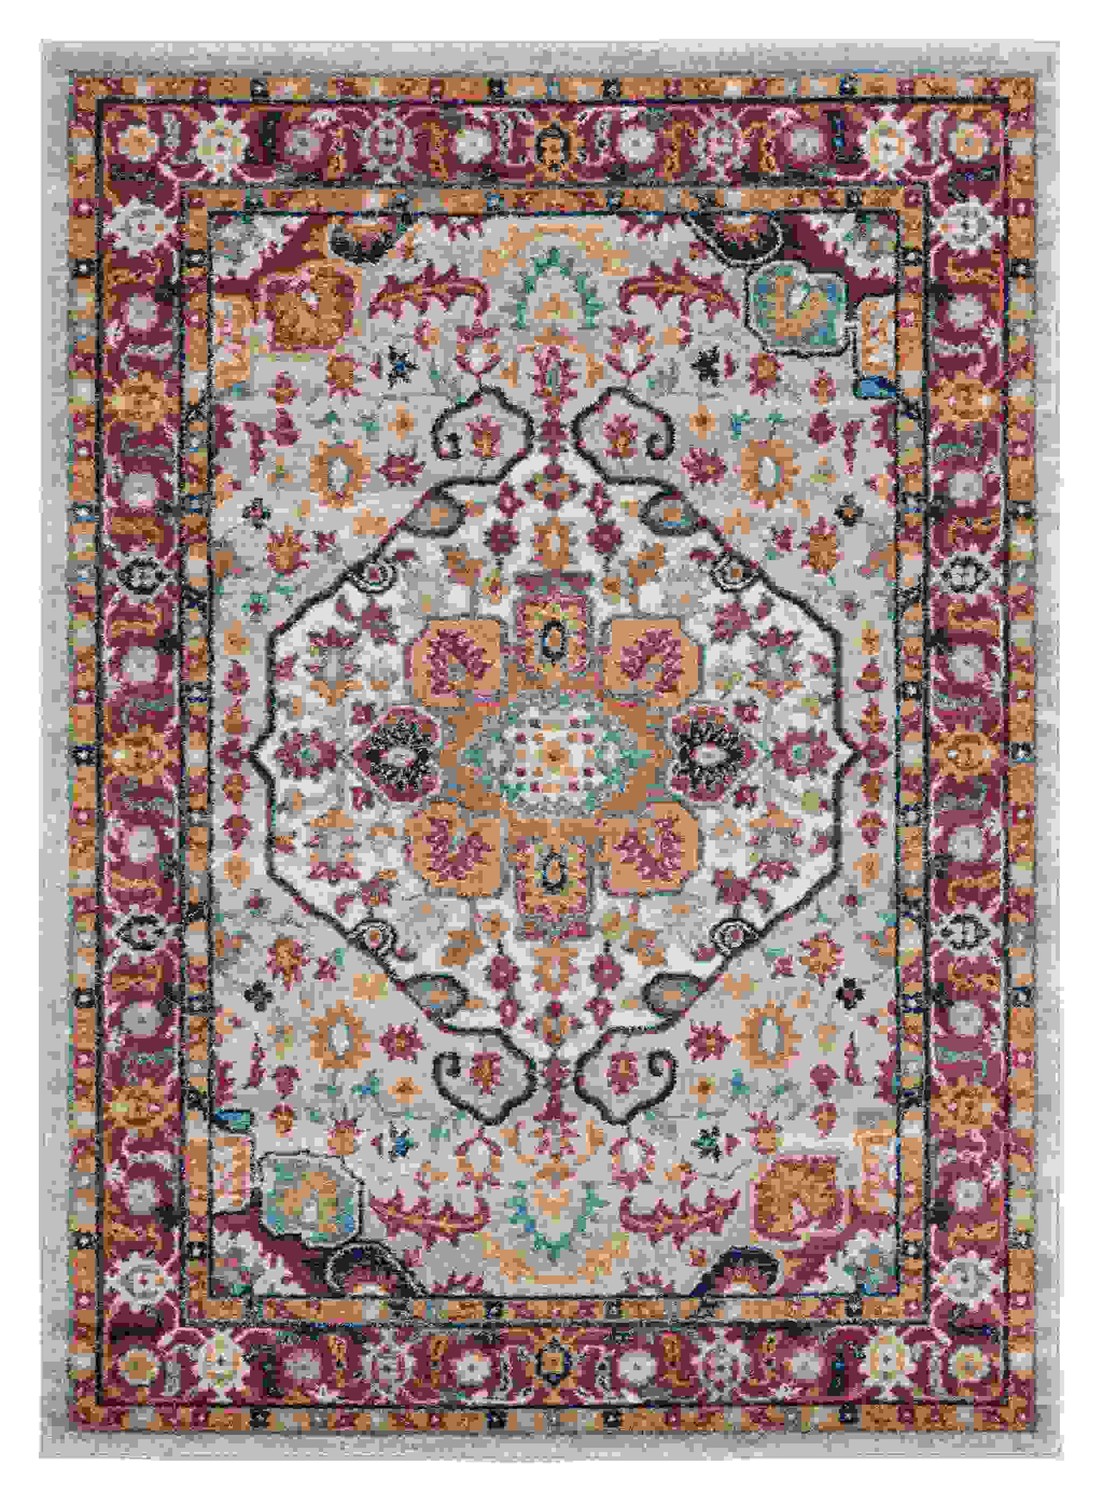 150" x 180" Multicolor Olefin Oversize Rug